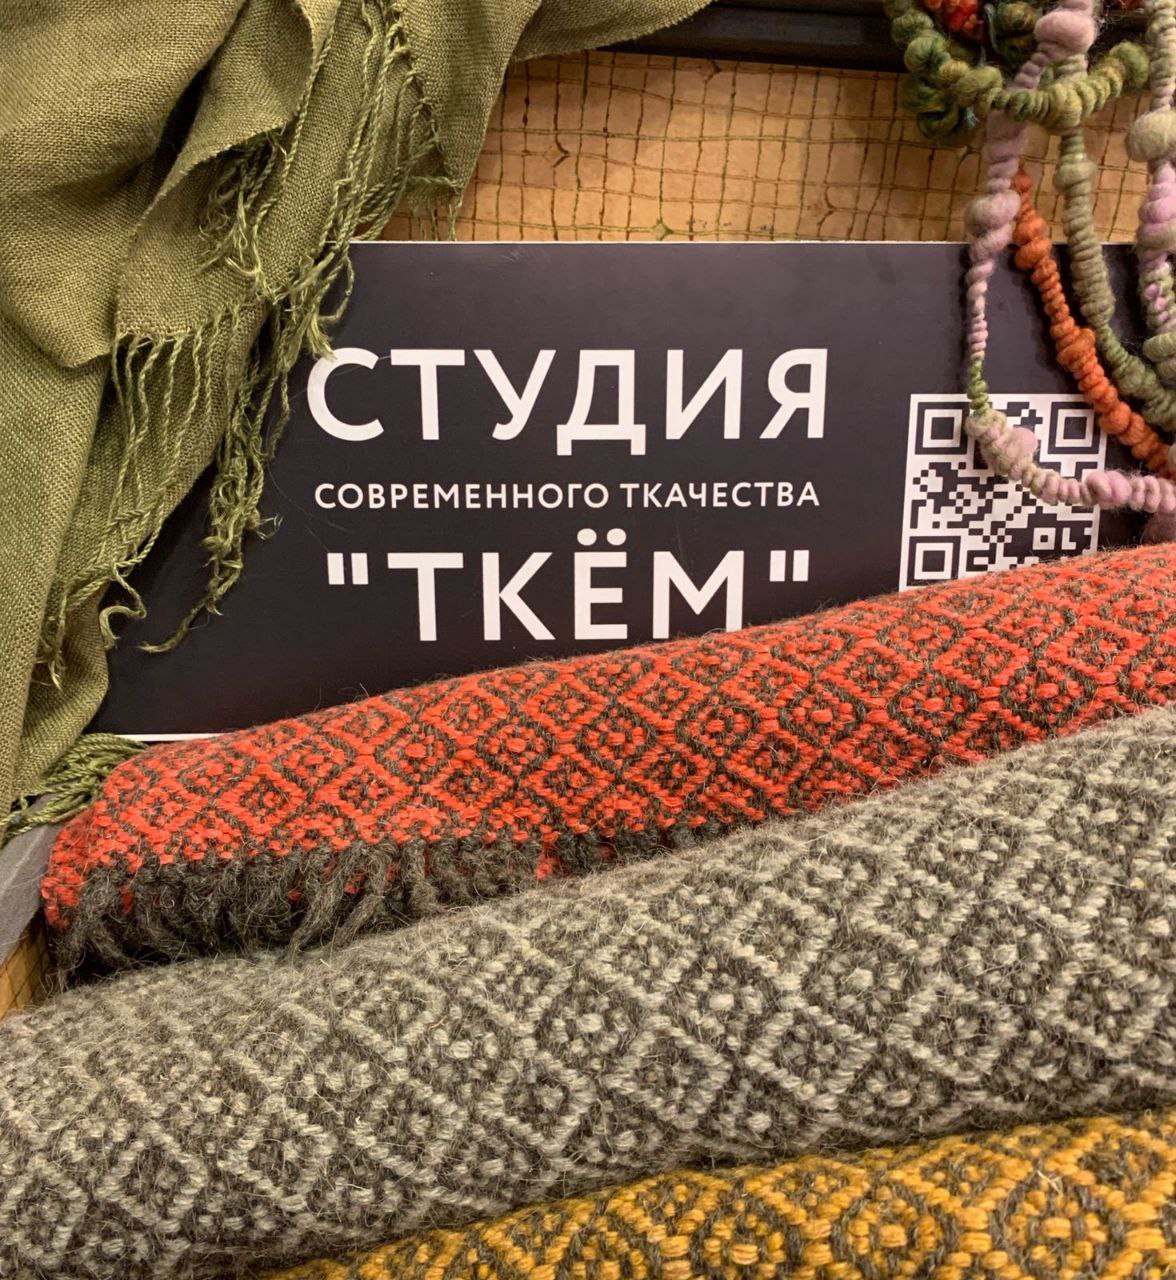 Предприниматель из Челябинска развивает ткацкий бизнес с помощью господдержки